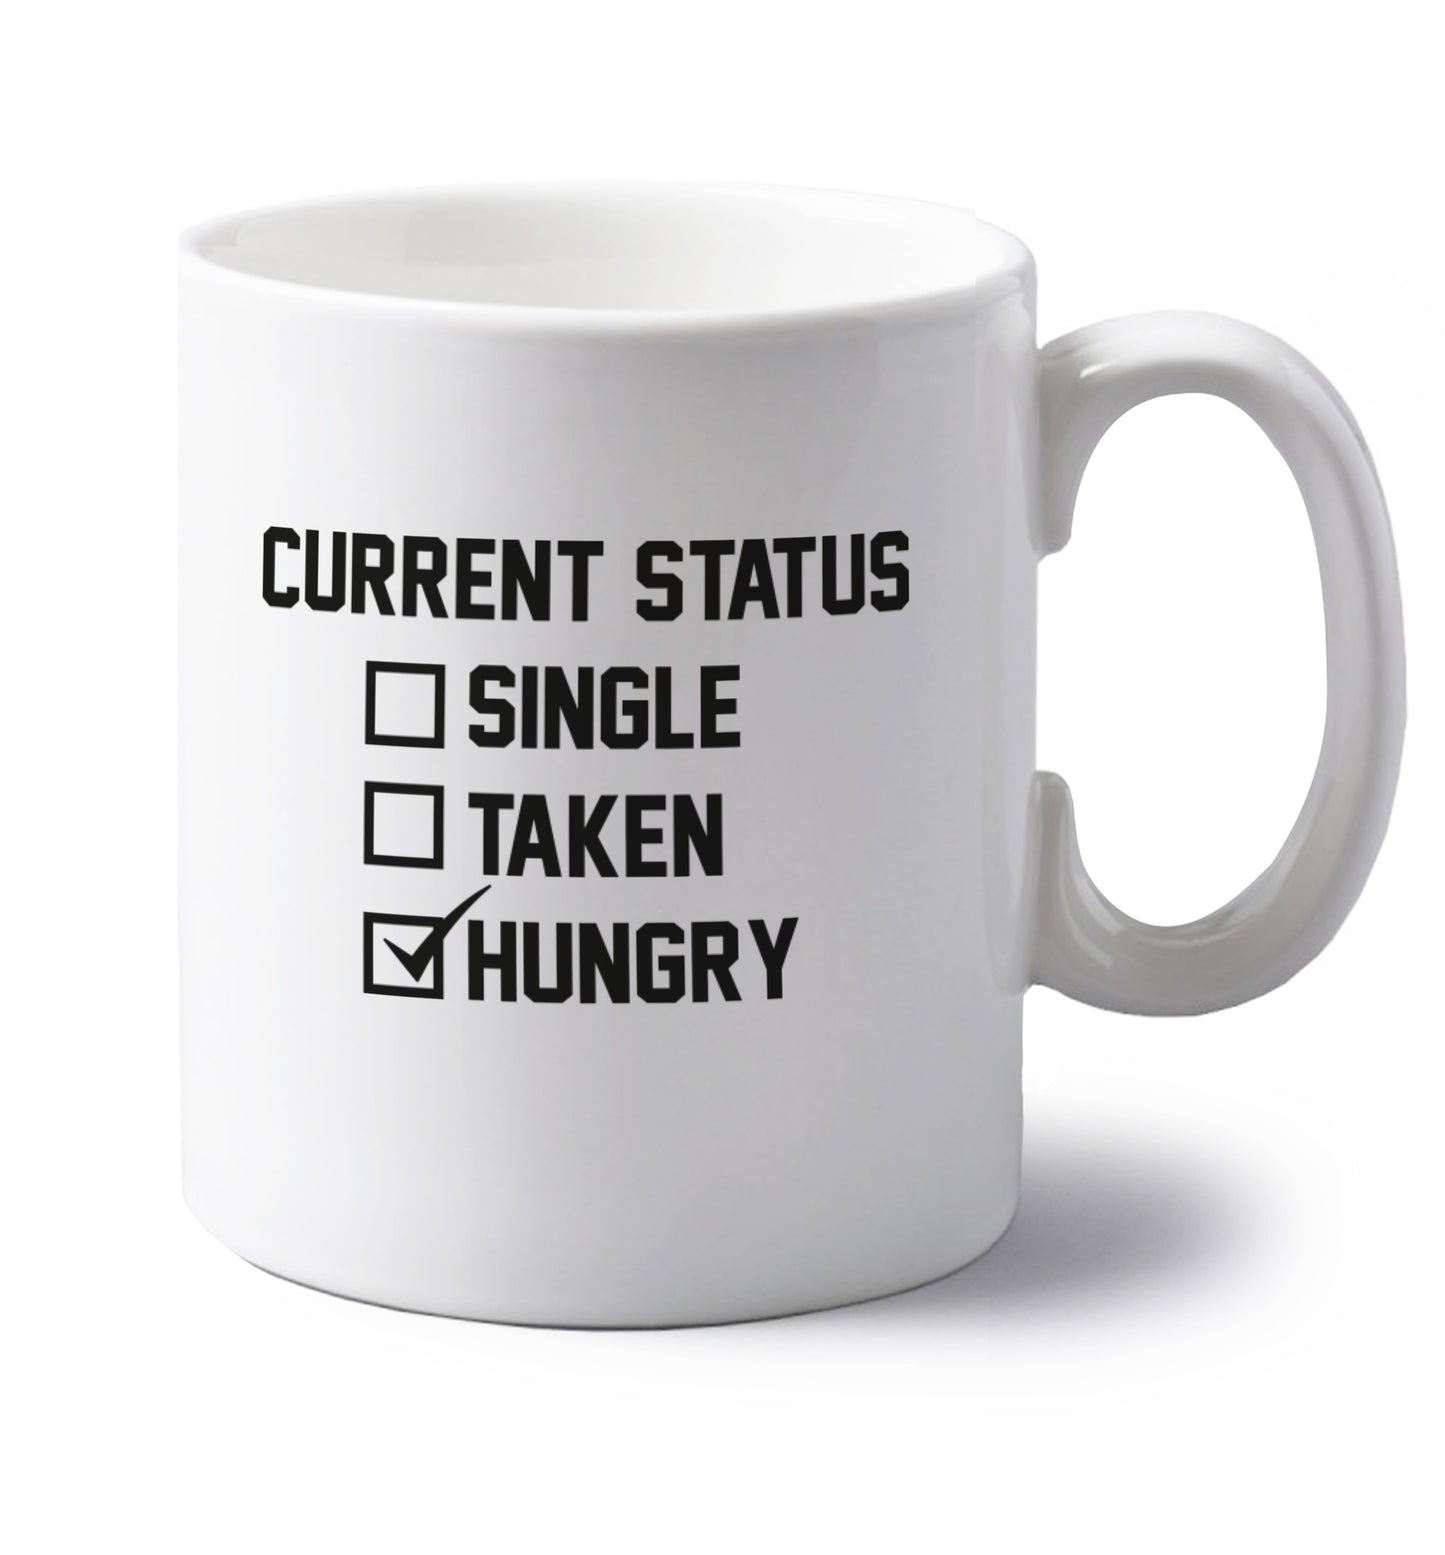 Relationship status single taken hungry left handed white ceramic mug 